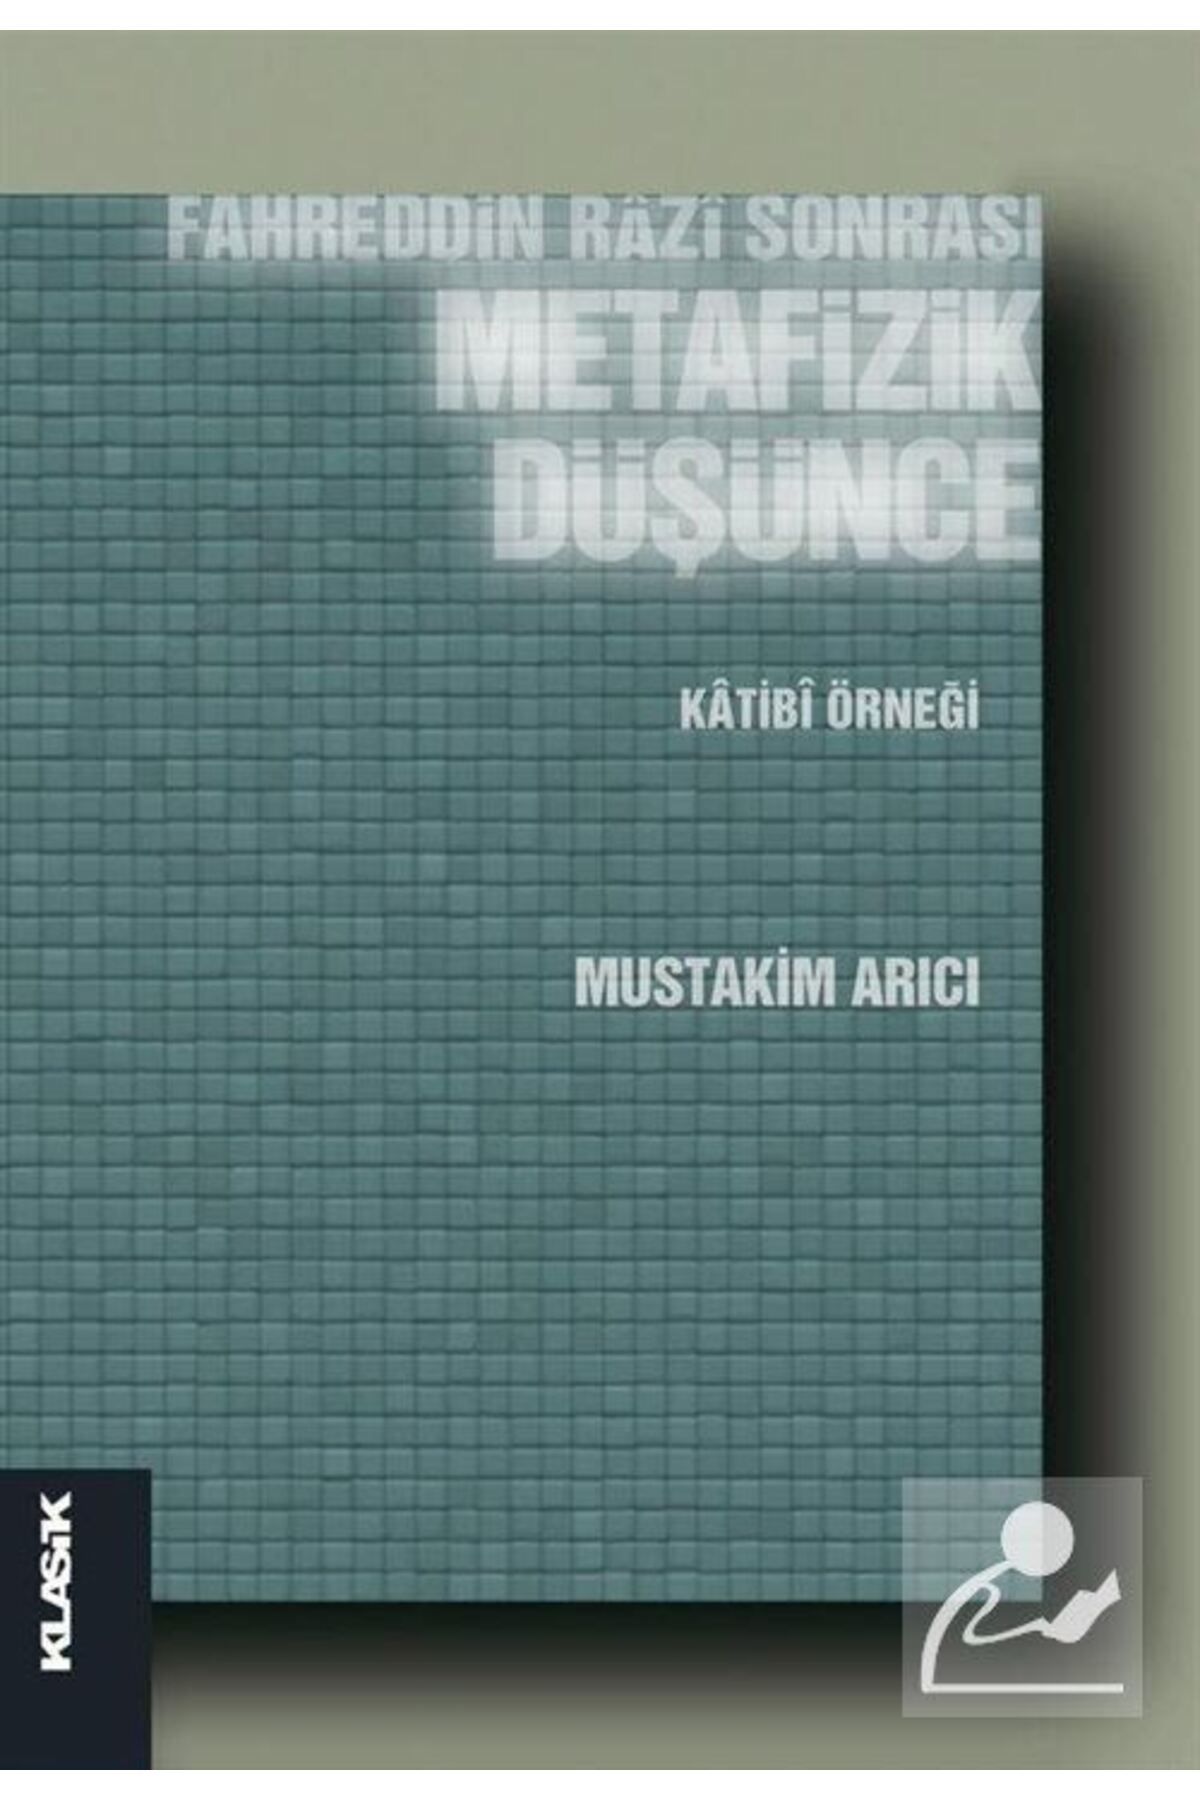 Klasik Yayınları Fahreddin Razi Sonrası Metafizik Düşünce & Katibi Örneği